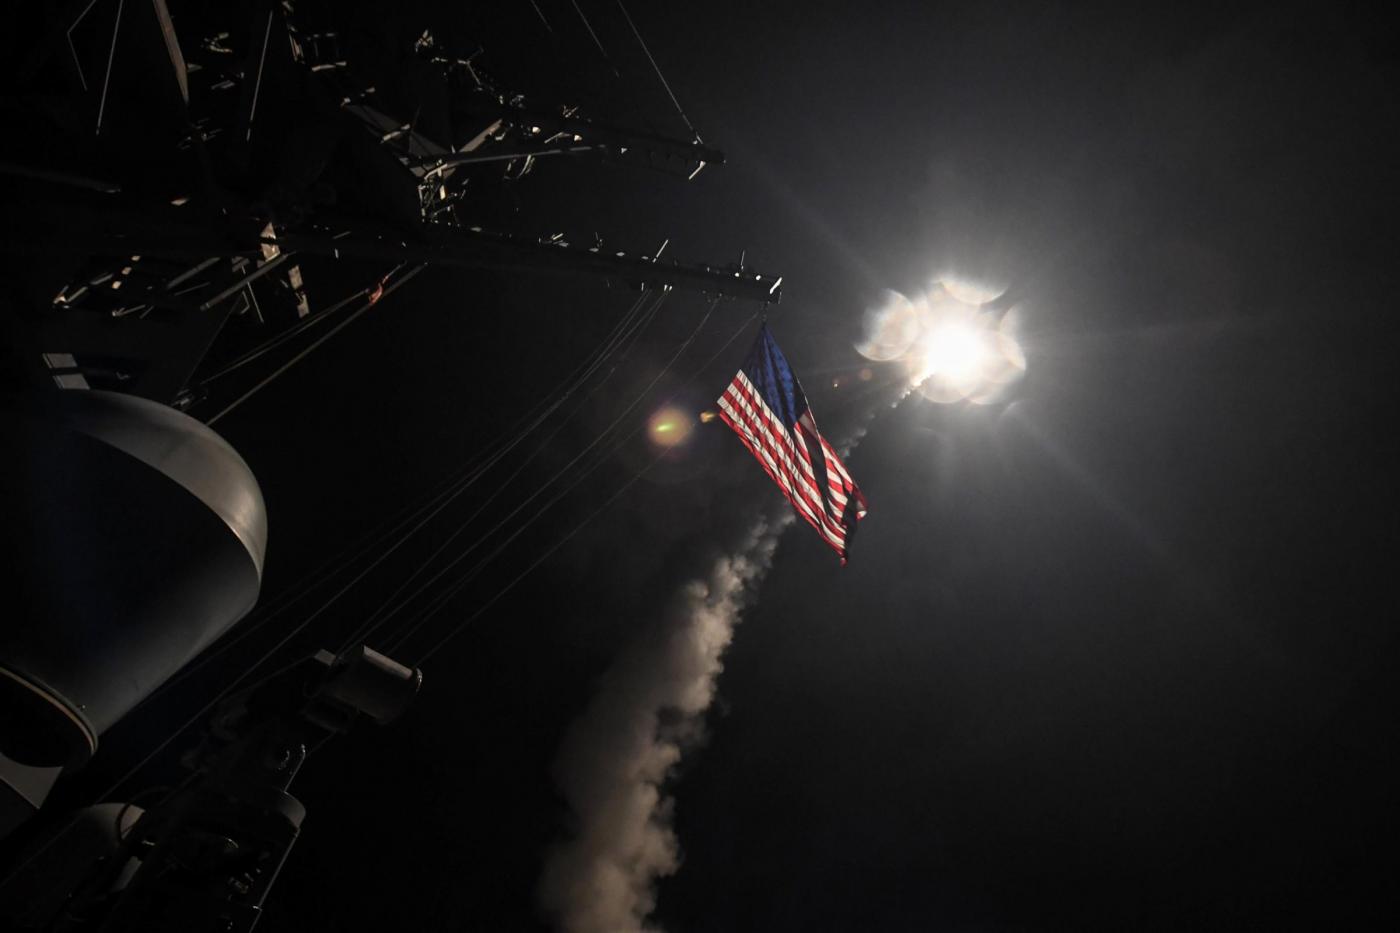 Attacco USA in Siria: il lancio dei missili dal mar mediterraneo